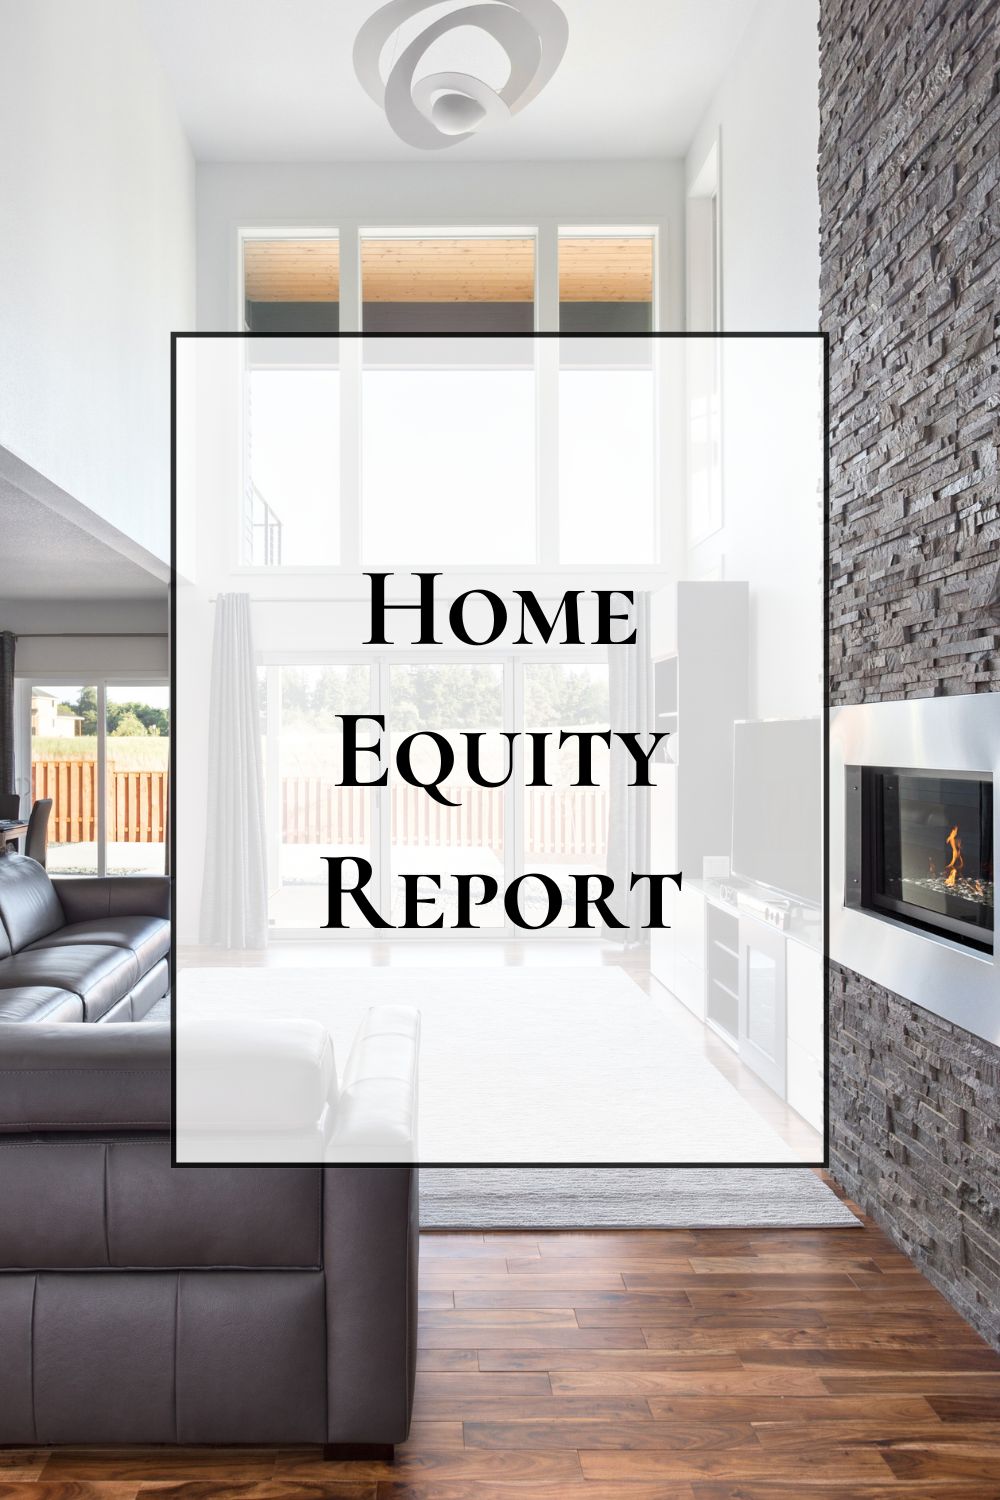 San Antonio home equity report - home value estimator - Tammy Dominguez San Antonio realtor and relocation specialist